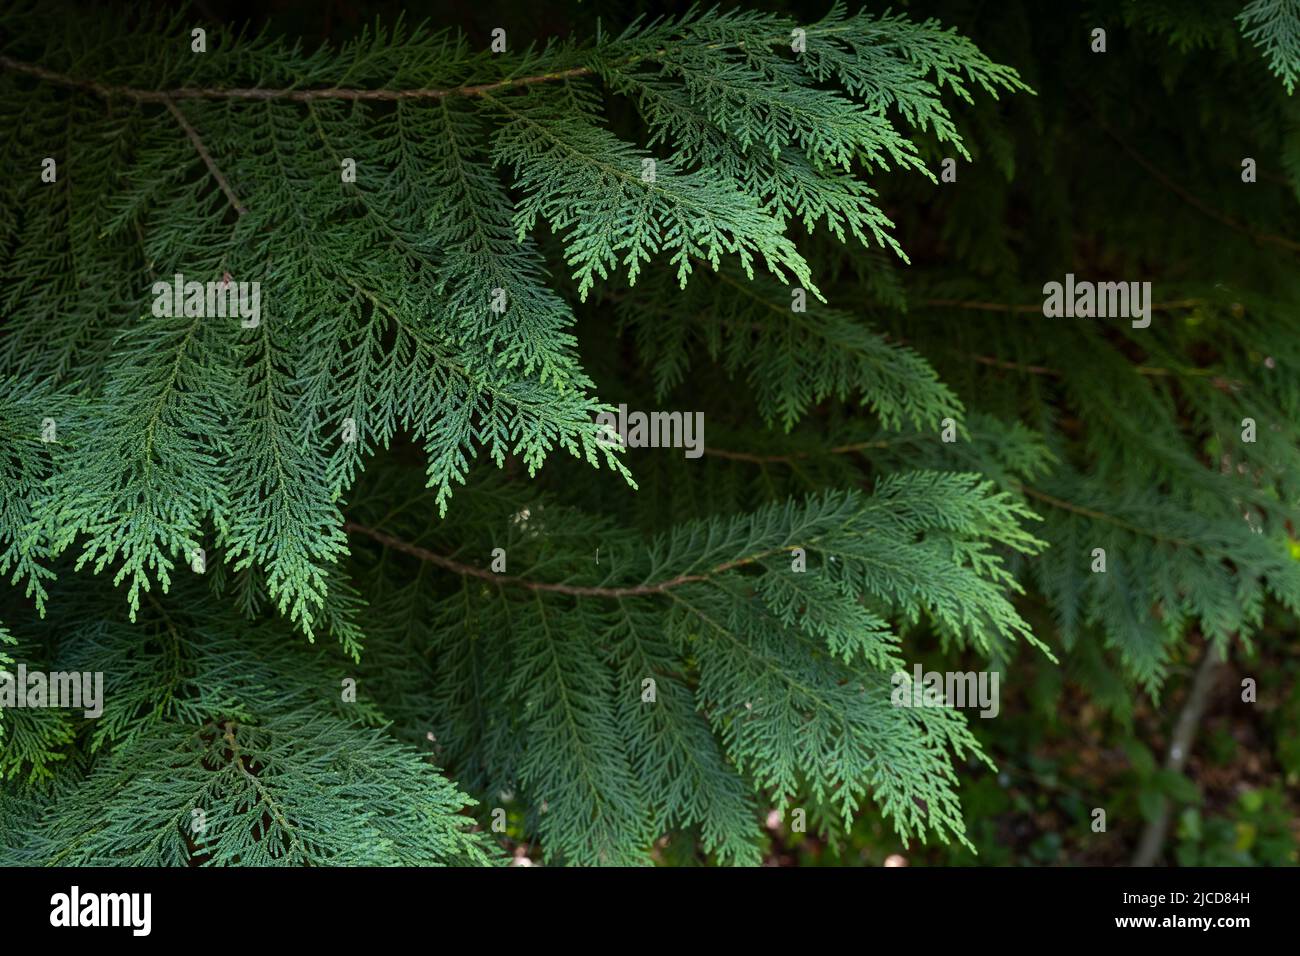 Lawson cypress (Chamaecyparis lawsoniana) evergreen foliage Stock Photo